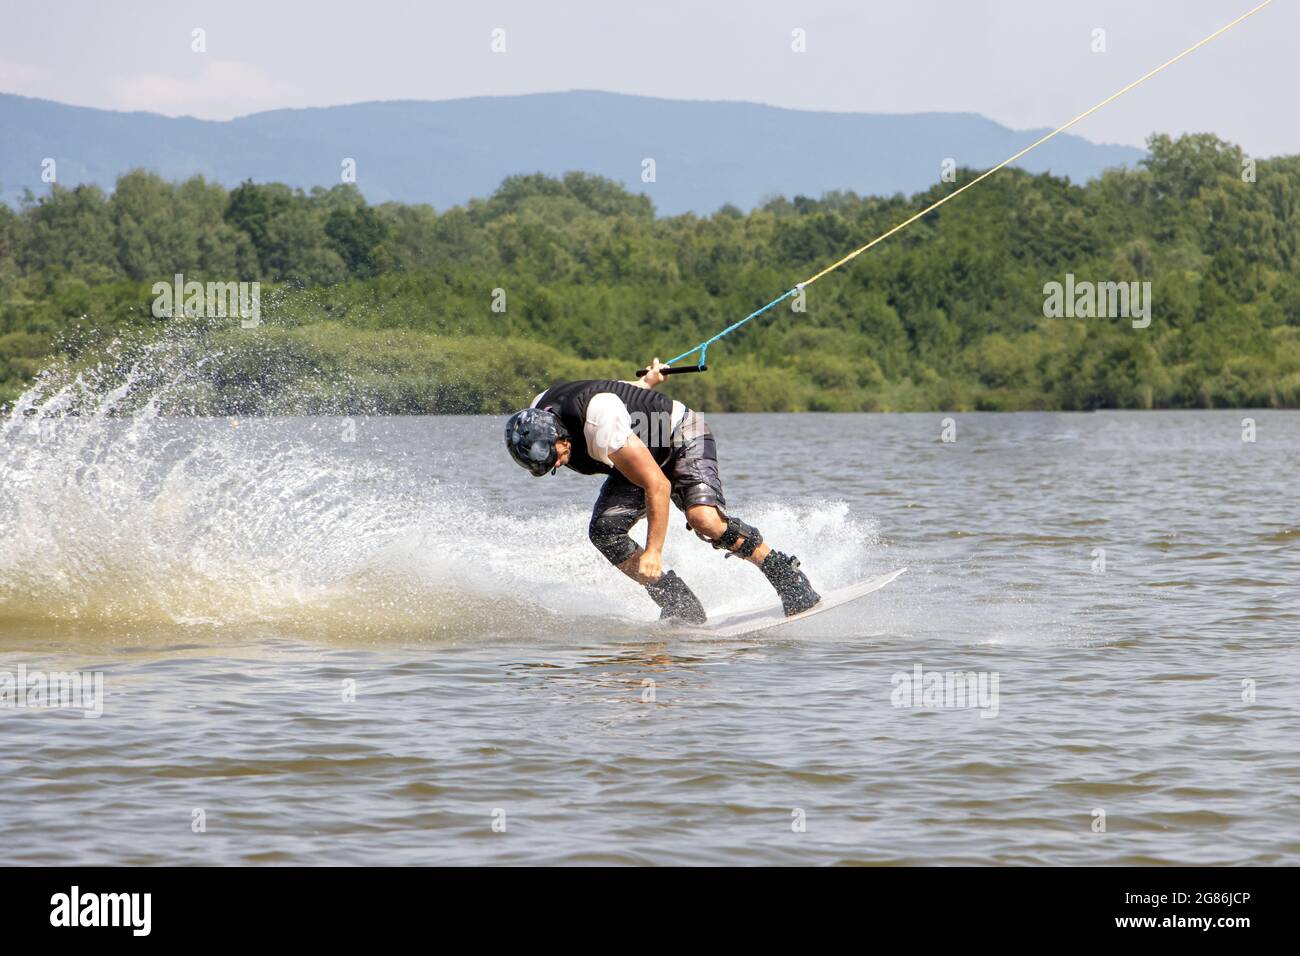 Ein Mann fährt auf dem Surfbrett. Ein Surfer wird auf einem Wasserschlepp auf dem See gezogen. Stockfoto